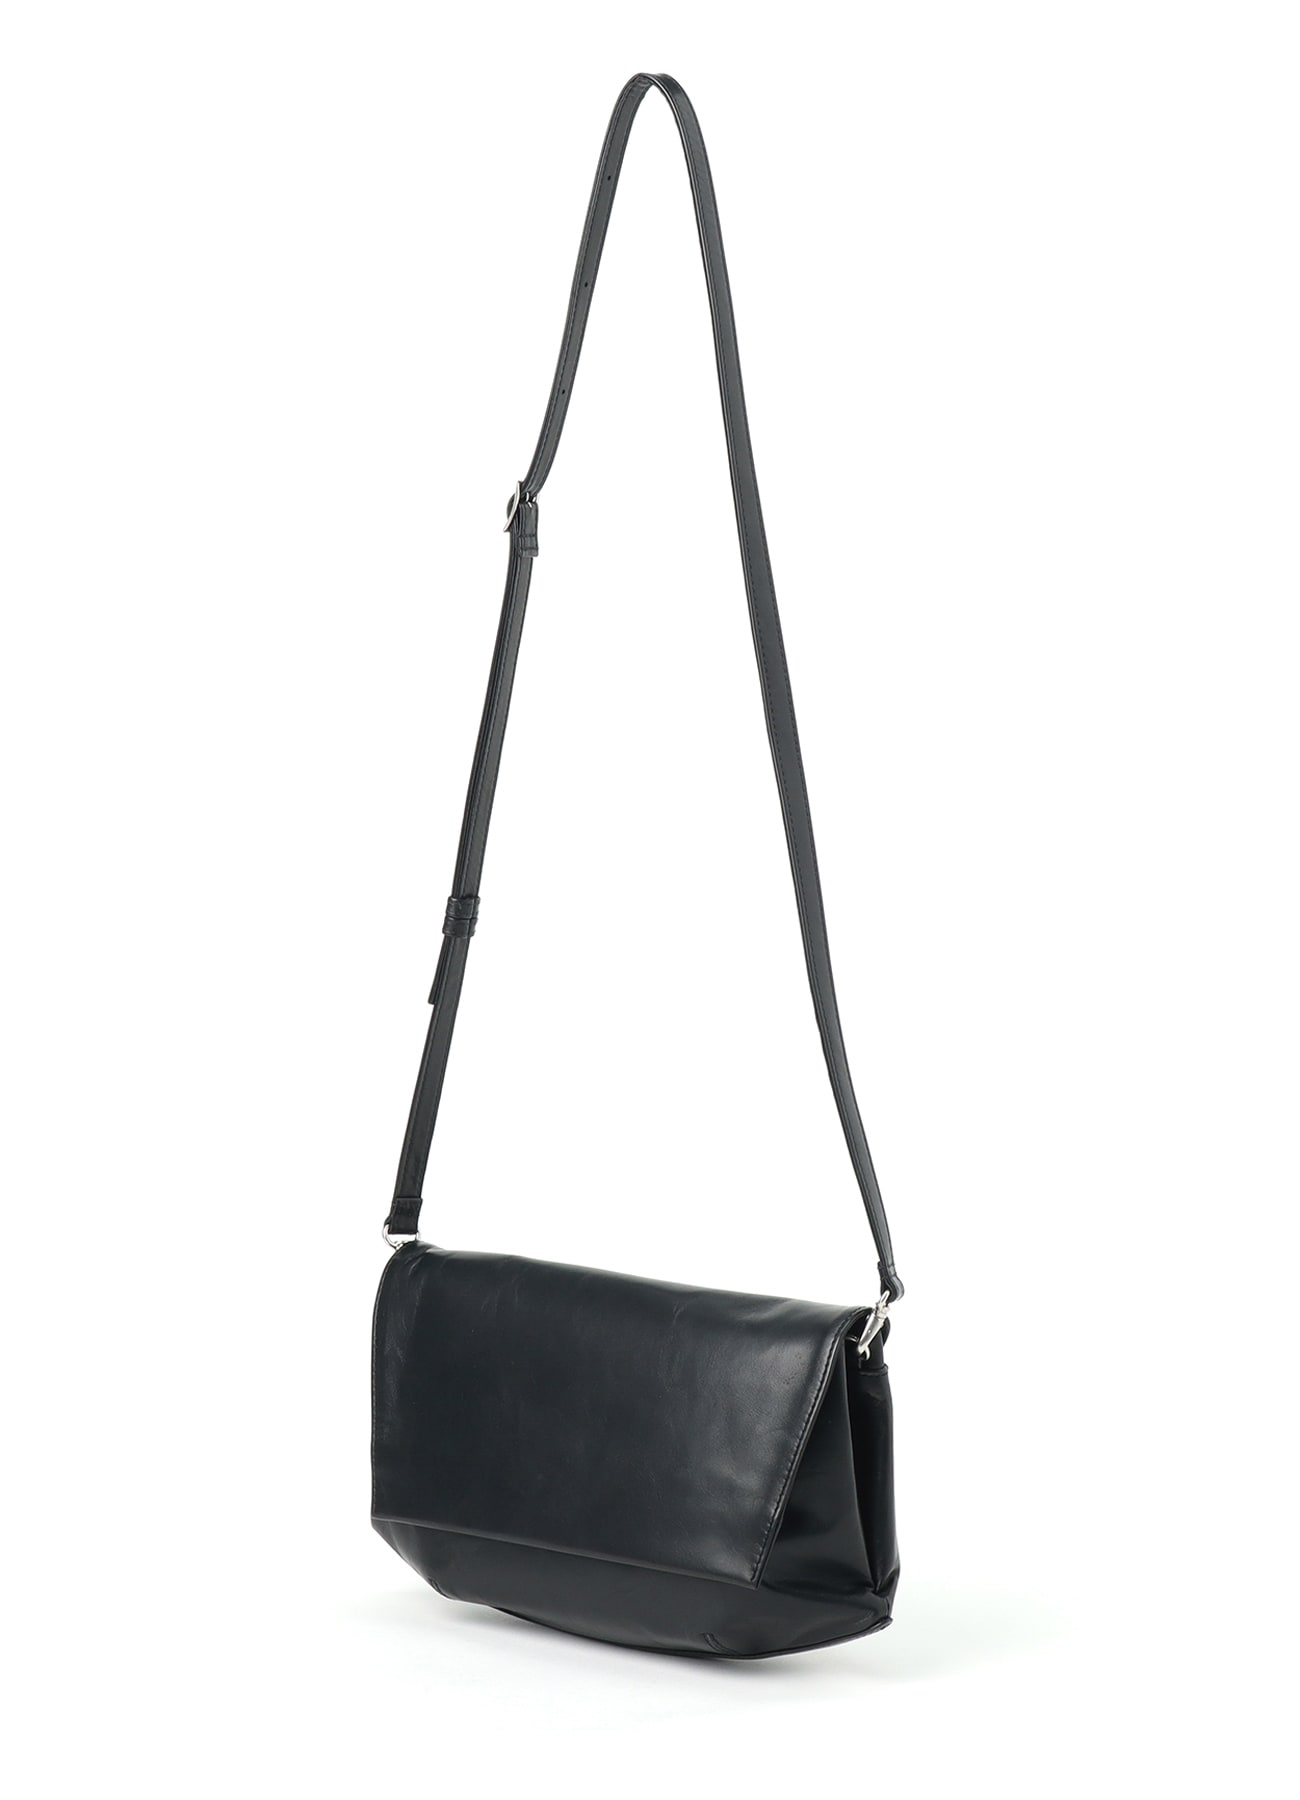 Black Soft Leather Flap Shoulder Bag Messenger Bags for Women